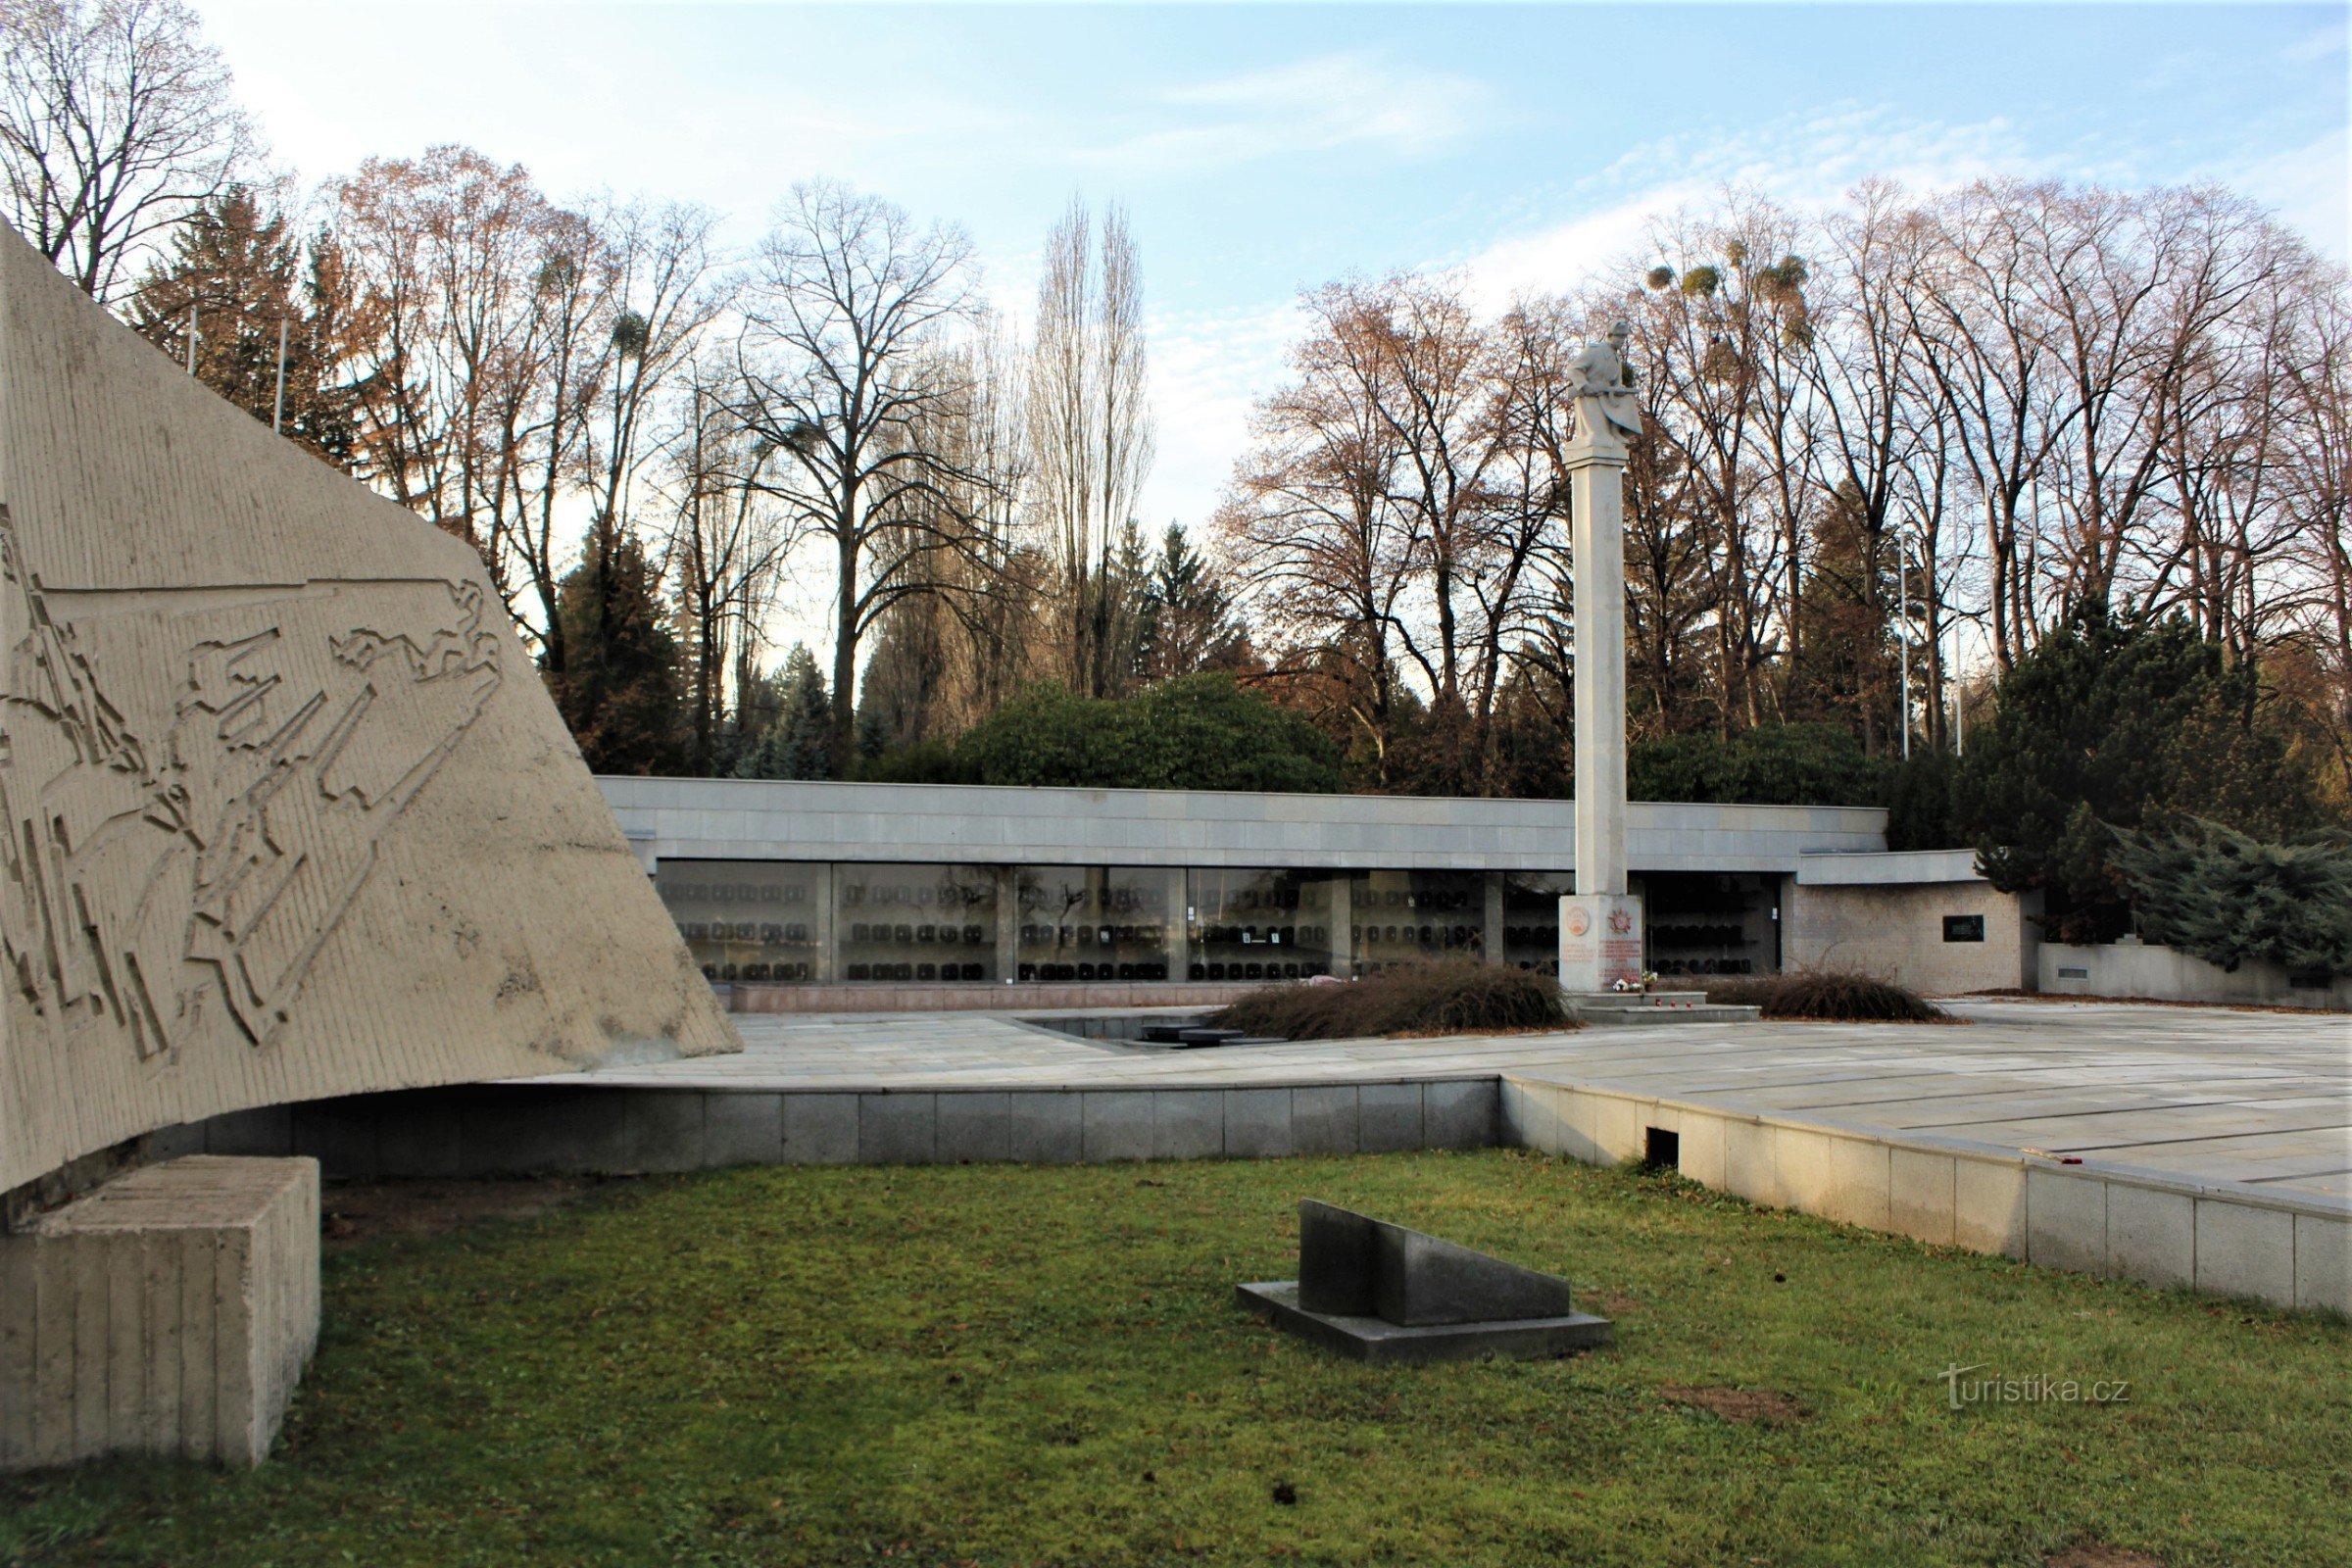 Miejsce pamięci cmentarza wojskowego z pomnikiem żołnierza